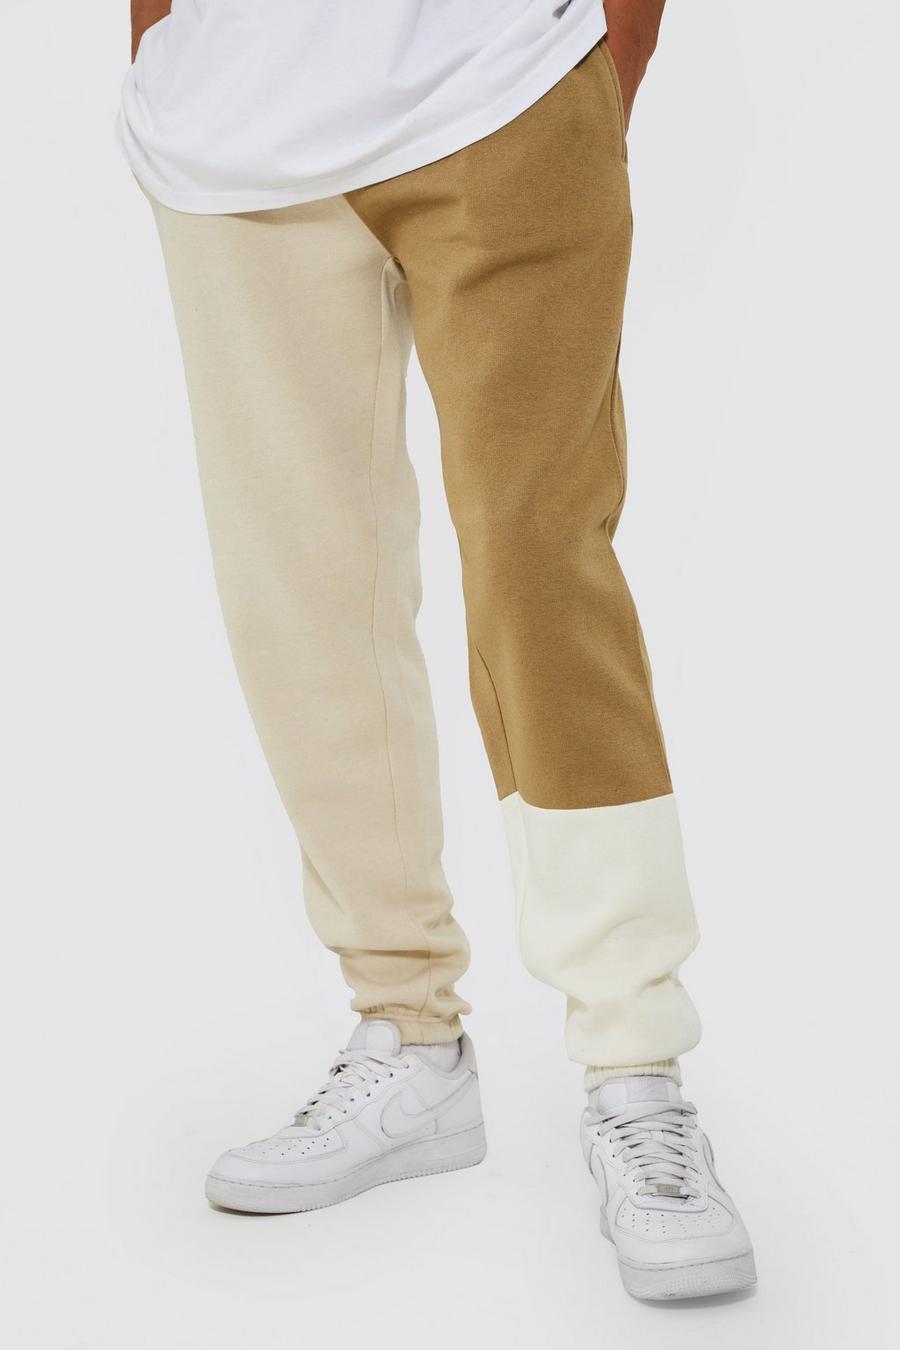 Pantaloni tuta Tall a blocchi di colore effetto patchwork, Ecru bianco